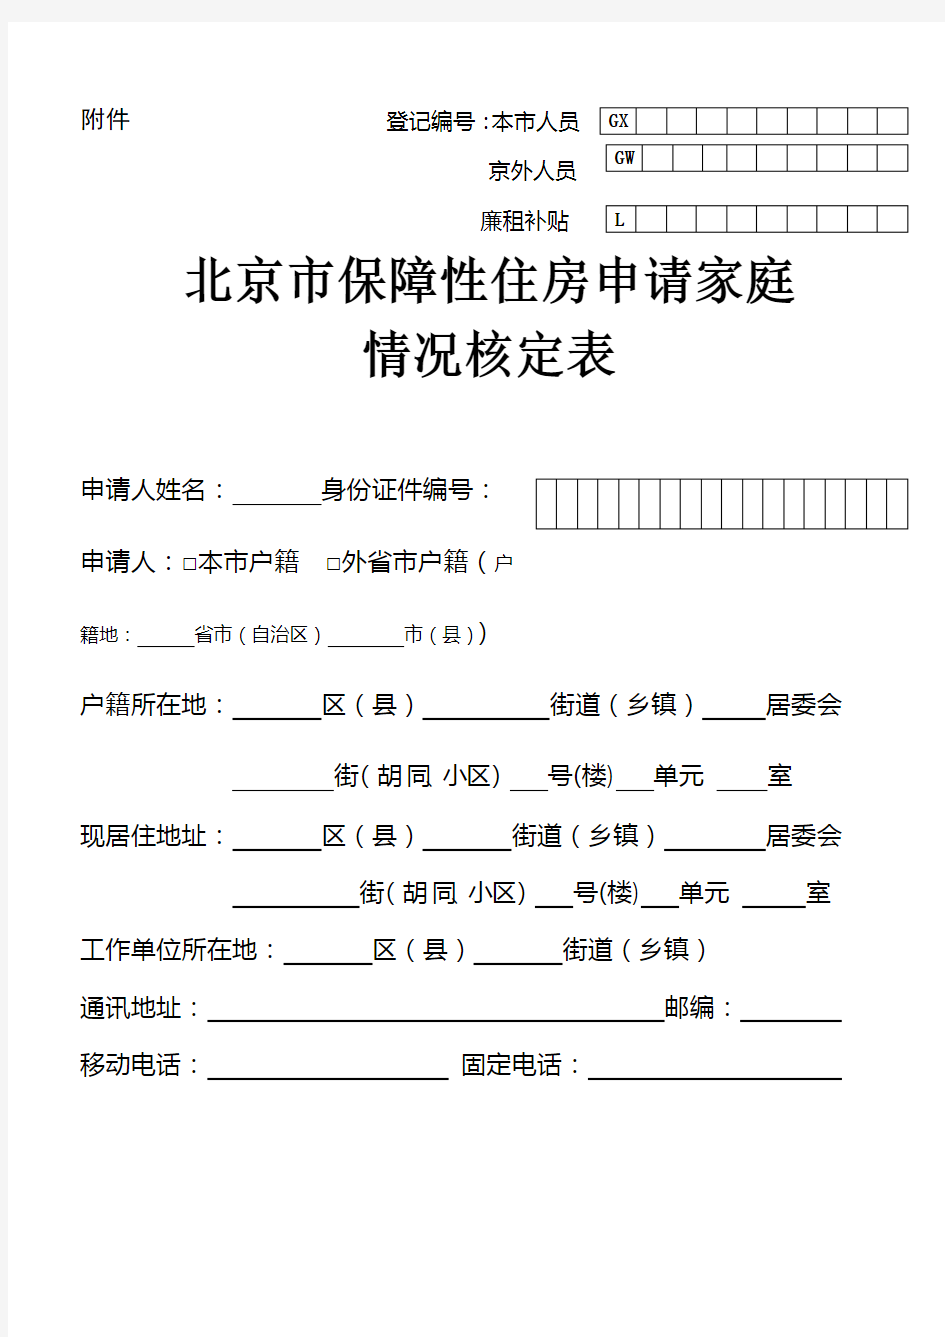 《北京市保障性住房申请家庭情况核定表》